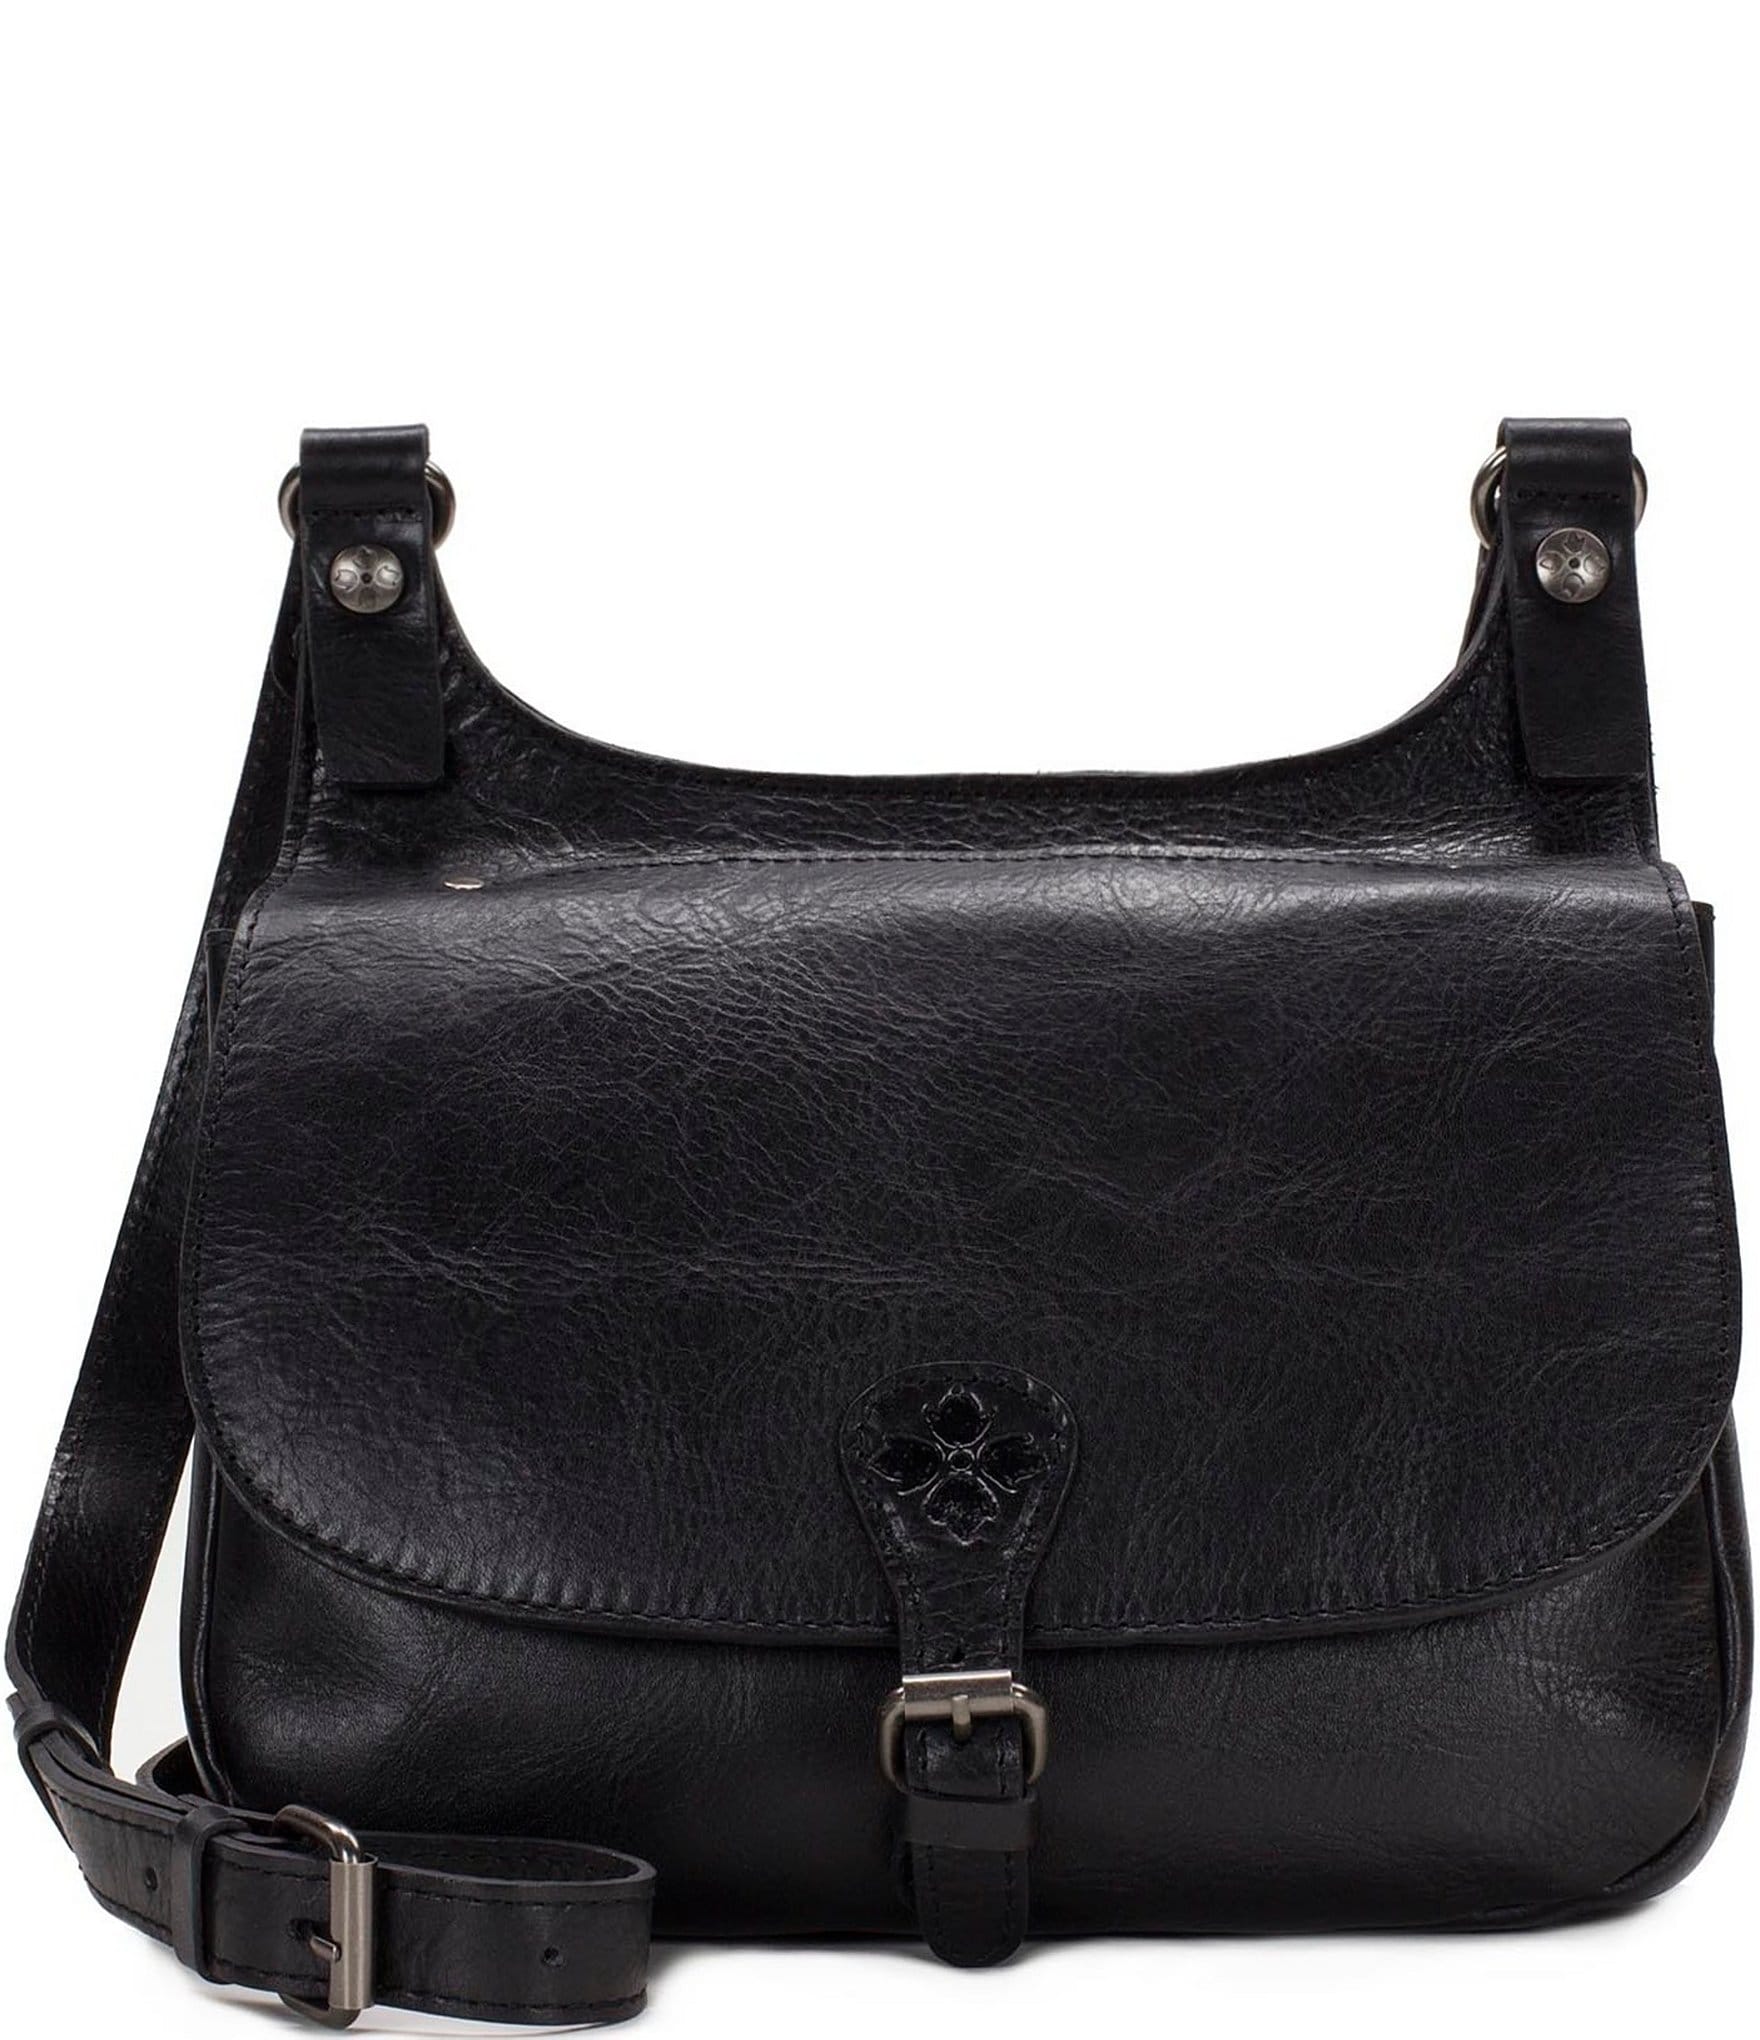 Vintage Dillards Suede Bag Black Leather Shoulder Strap Handbag Purse